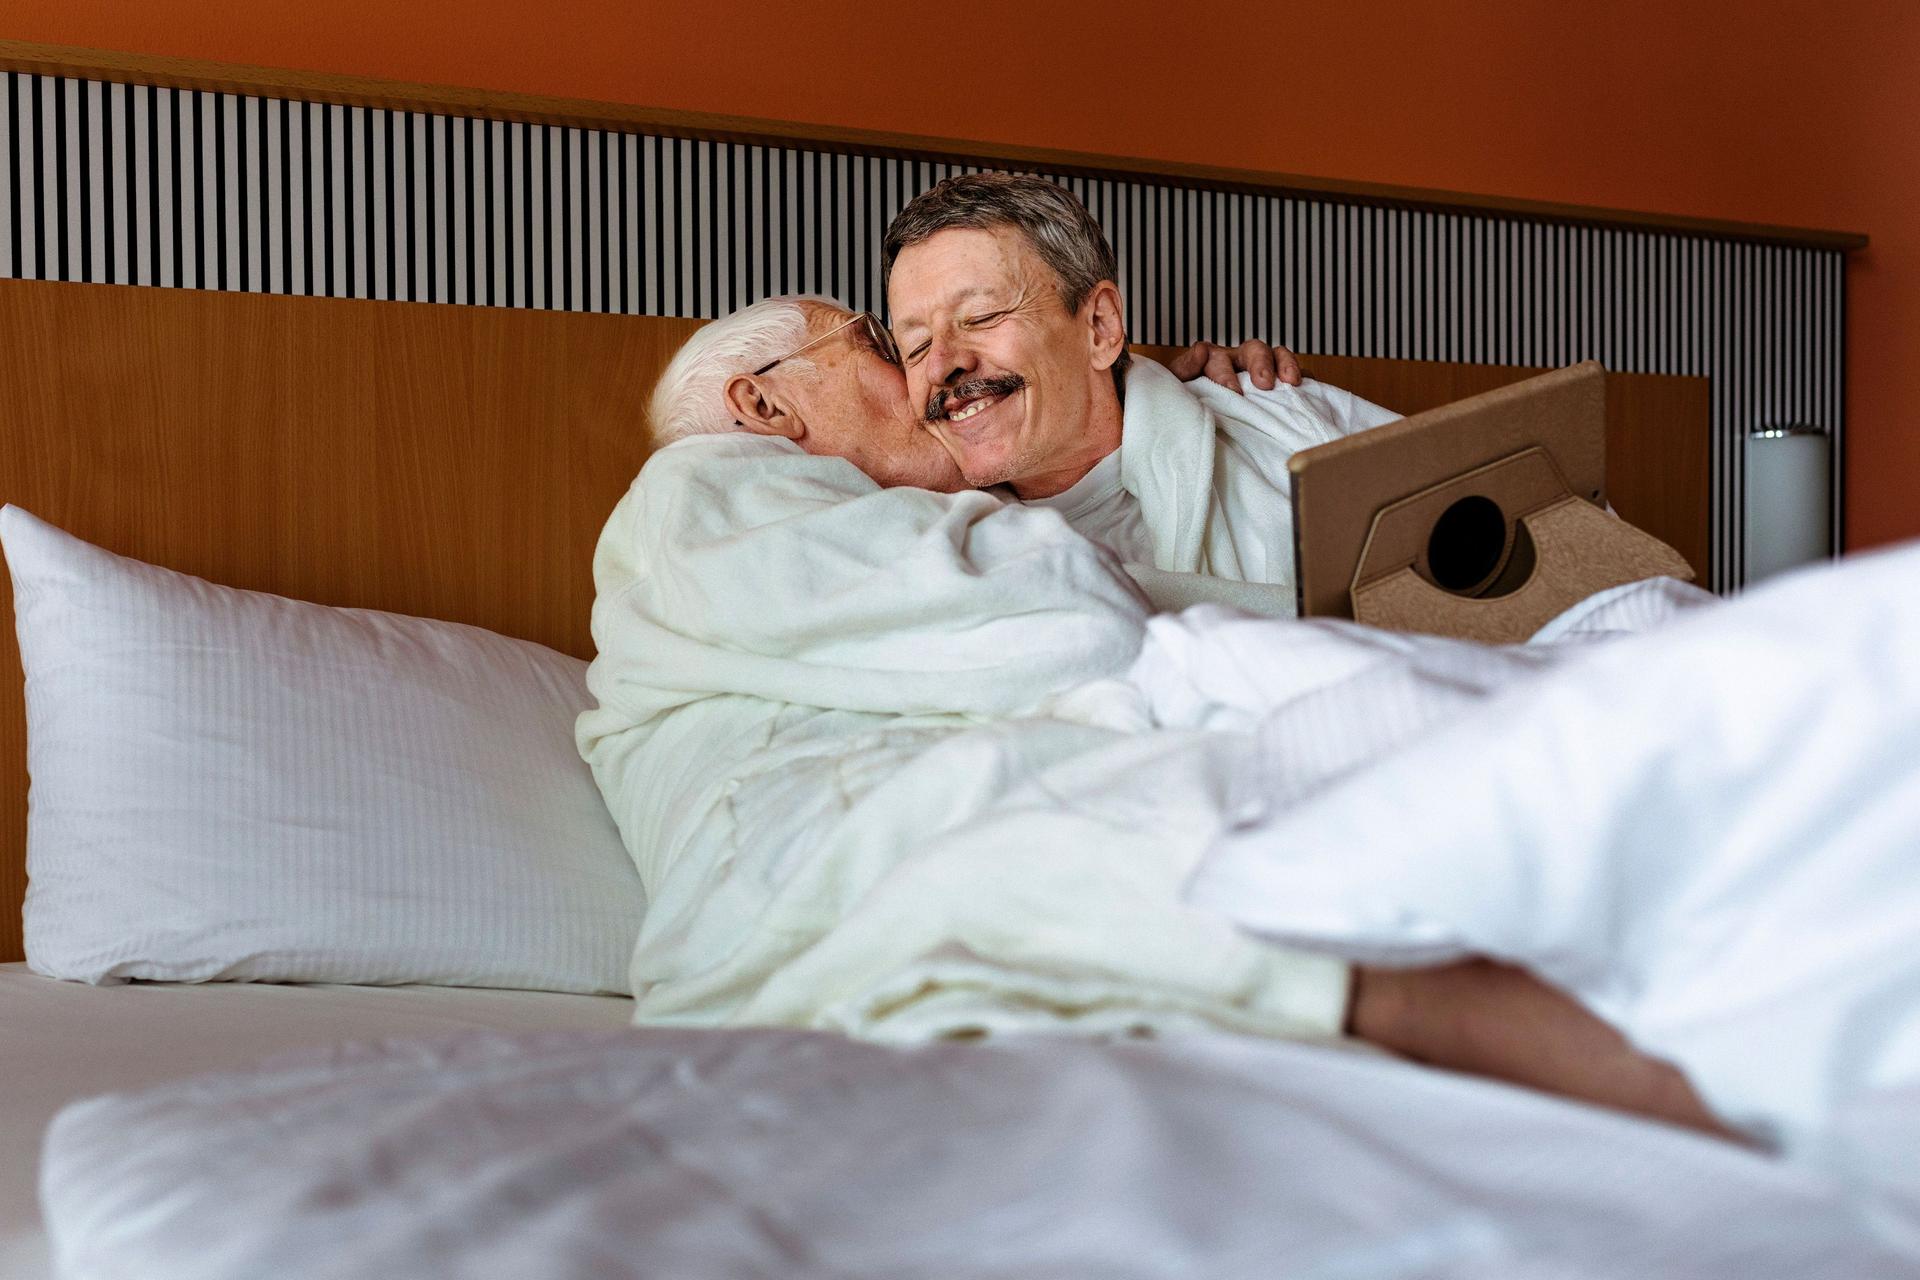 Zwei reifere Männer, die in Bademänteln in einem Bett liegen und sich umarmen. Ein Mann küsst den anderen auf die Backe während dieser ein Tablet auf dem Schoß hat.